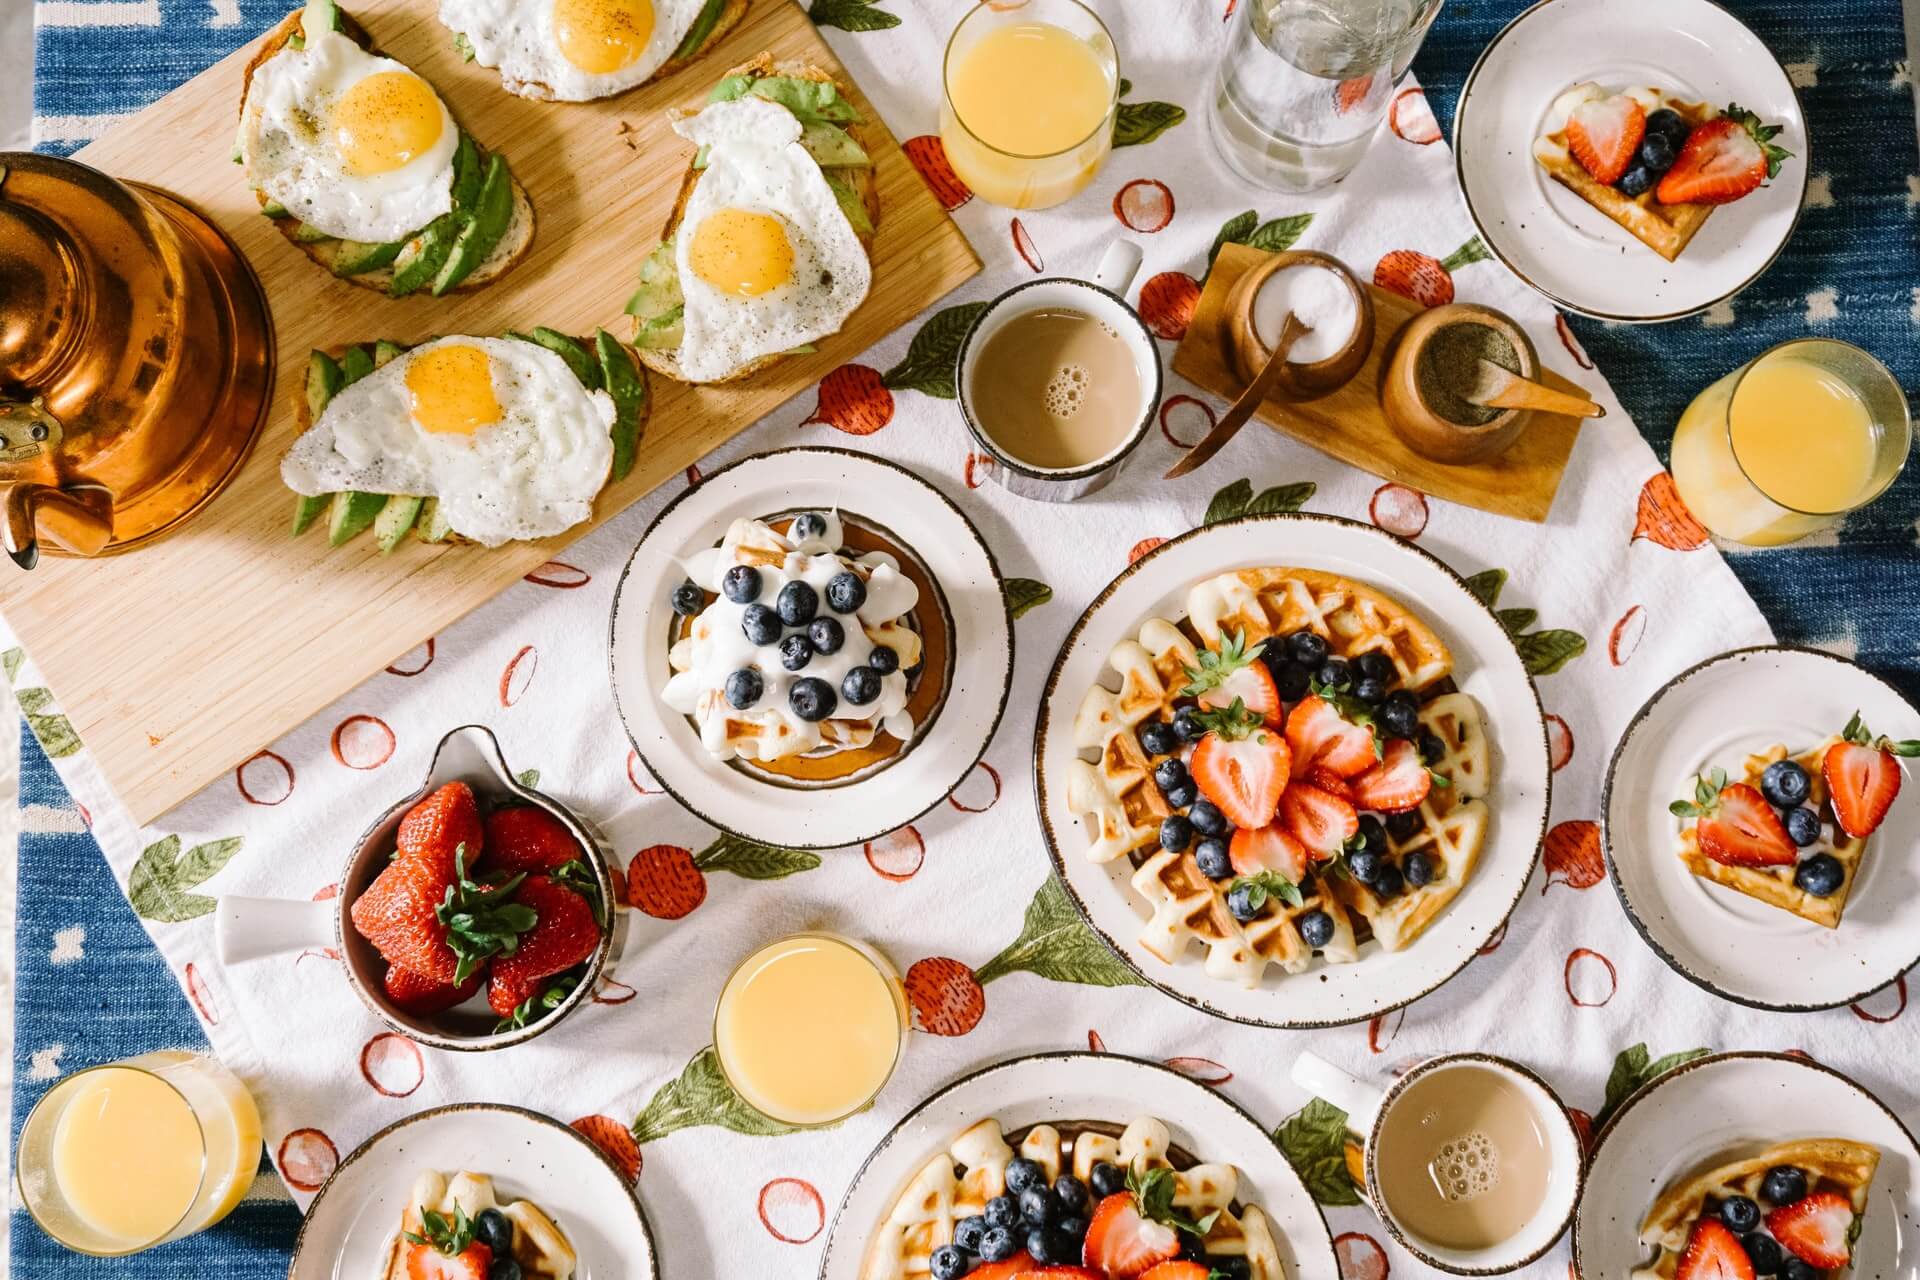 Qué comer en el desayuno, almuerzo y cena para bajar de peso?